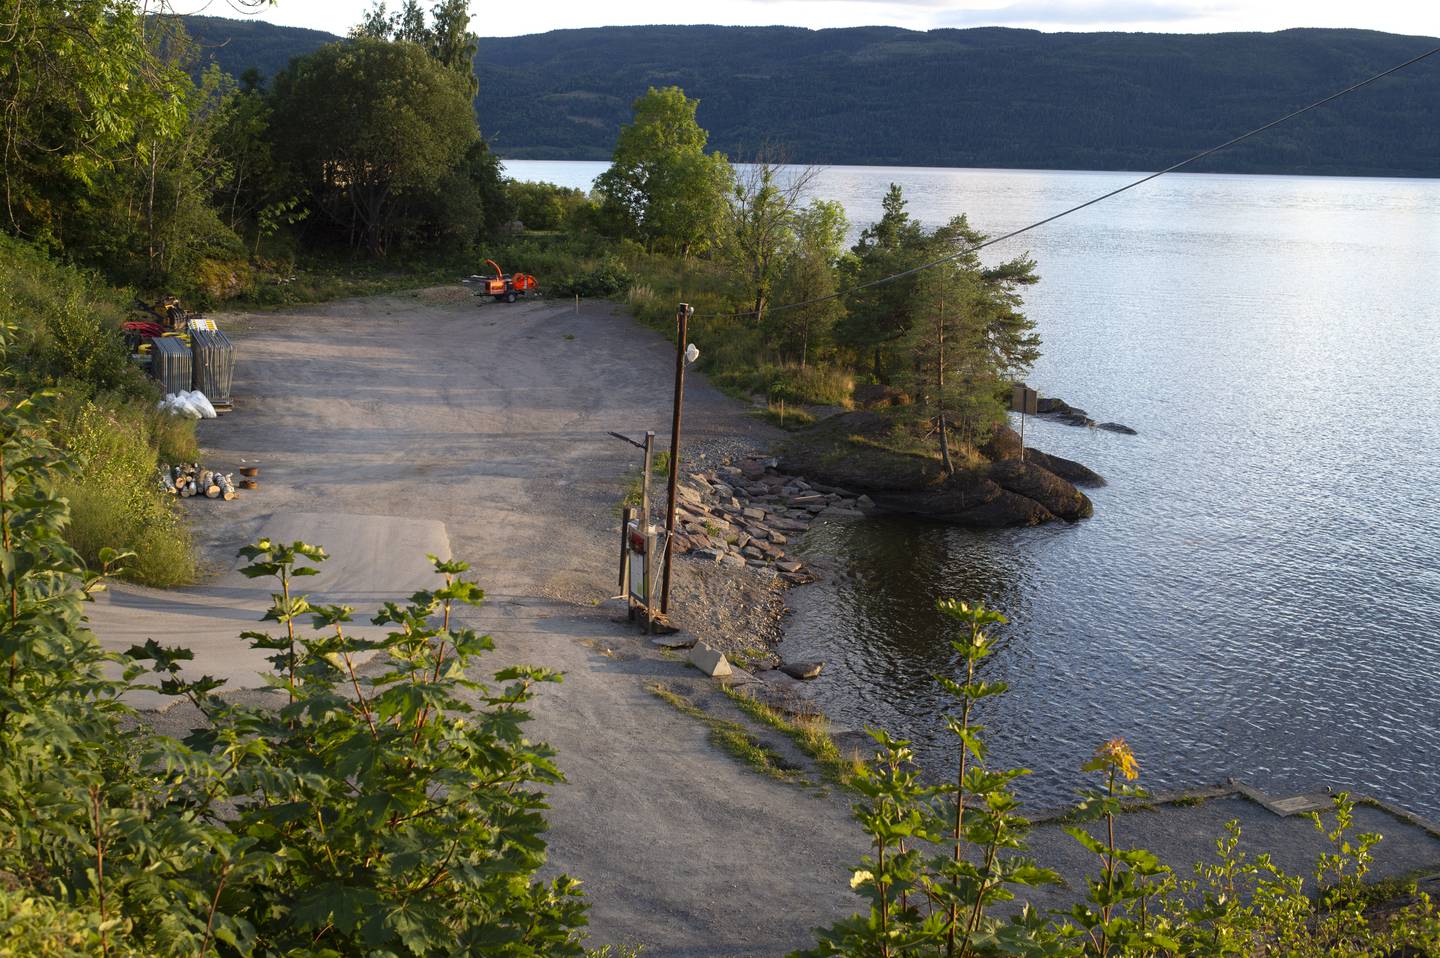 Slik såg Utøykaia ut før Statsbygg sette i gang arbeidet med minnestaden i august 2020.
Foto: Annika Byrde / NTB / NPK